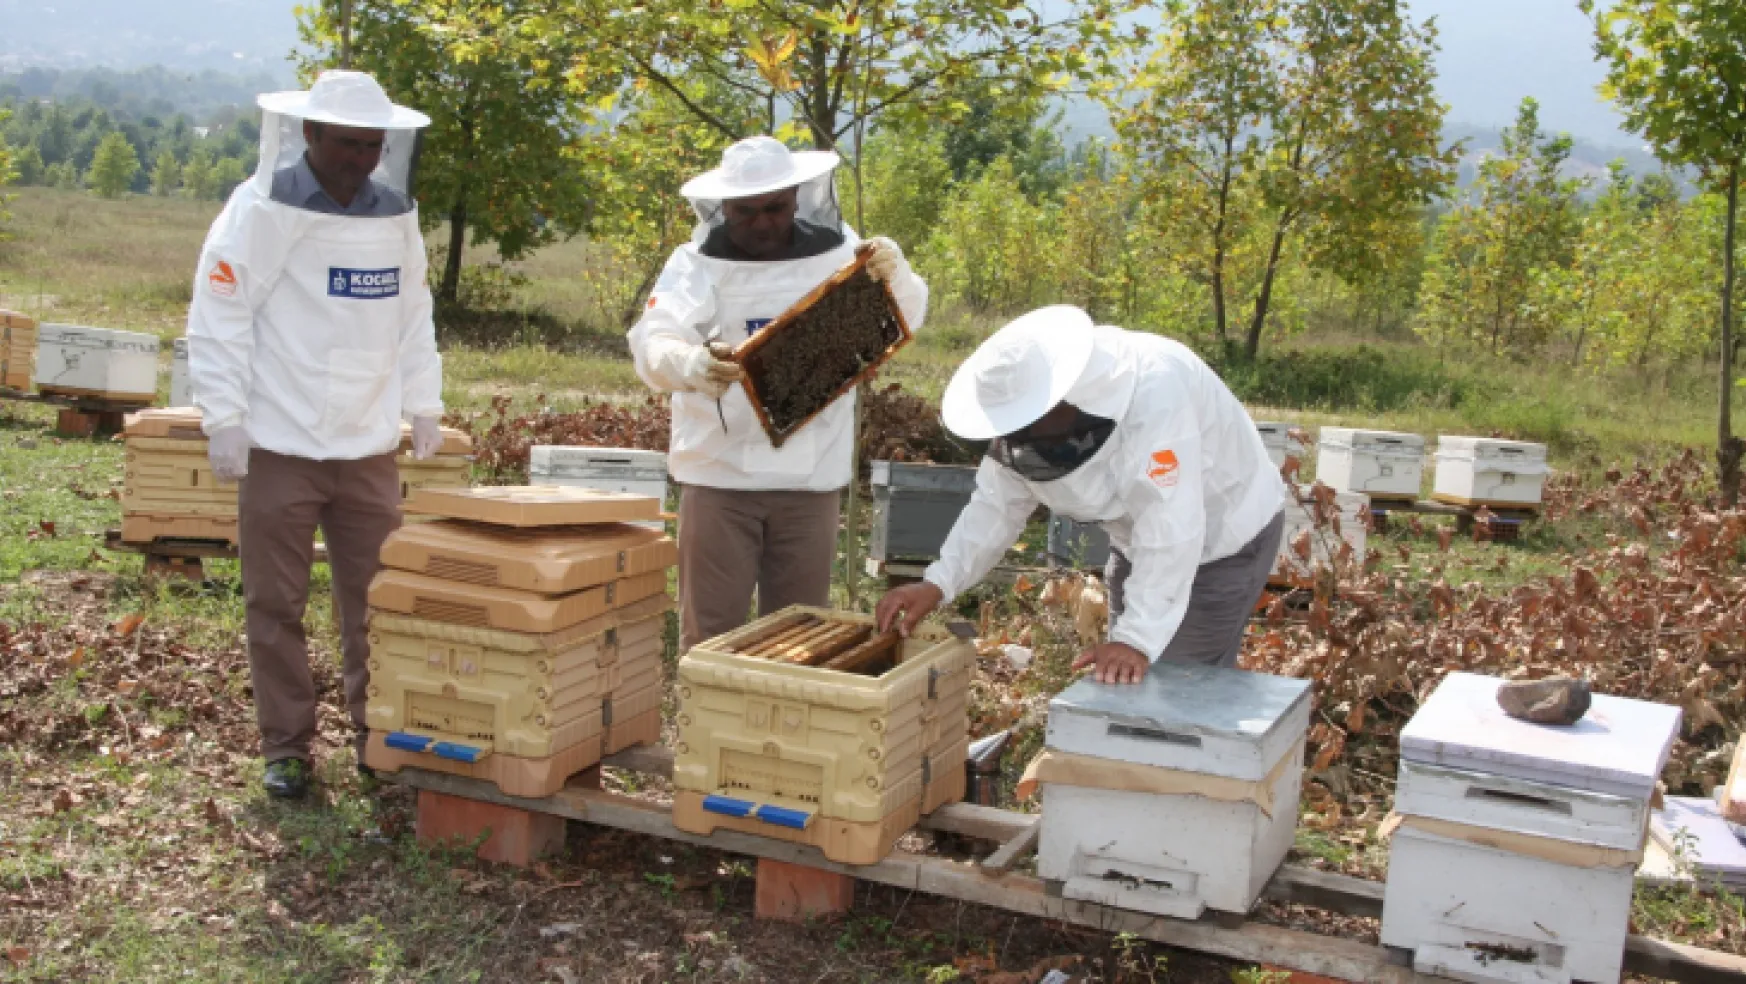 Büyükşehir'den arıcılara 55 ton arı yemi